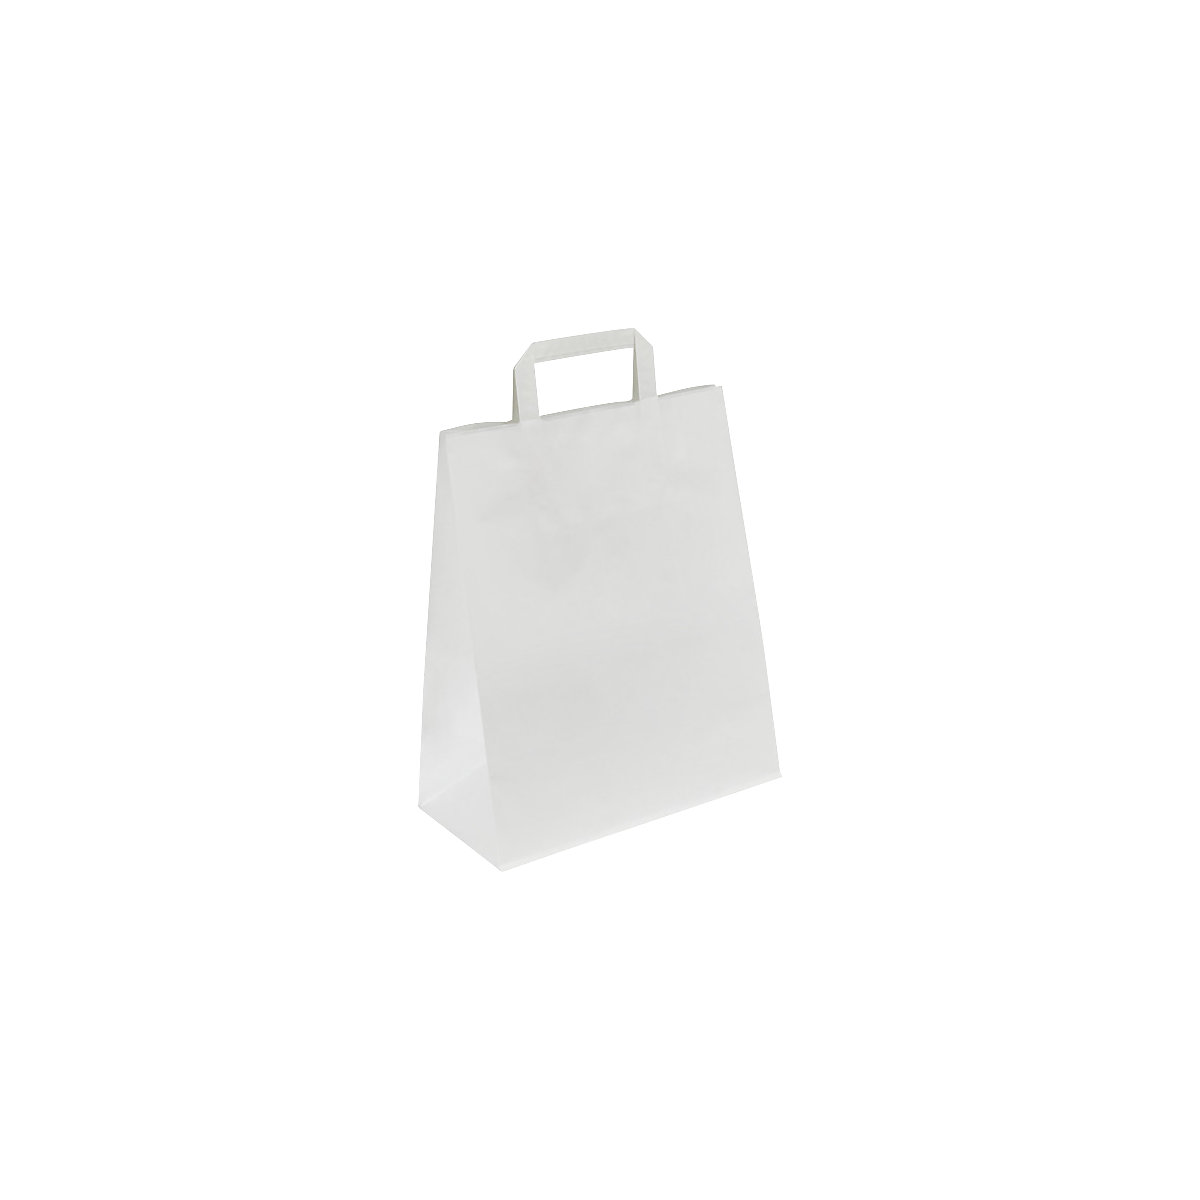 Sacchetto di carta, bianco, lungh. x largh. x alt. 400 x 160 x 450 mm, 100 g/m², conf. da 200 pz.-3